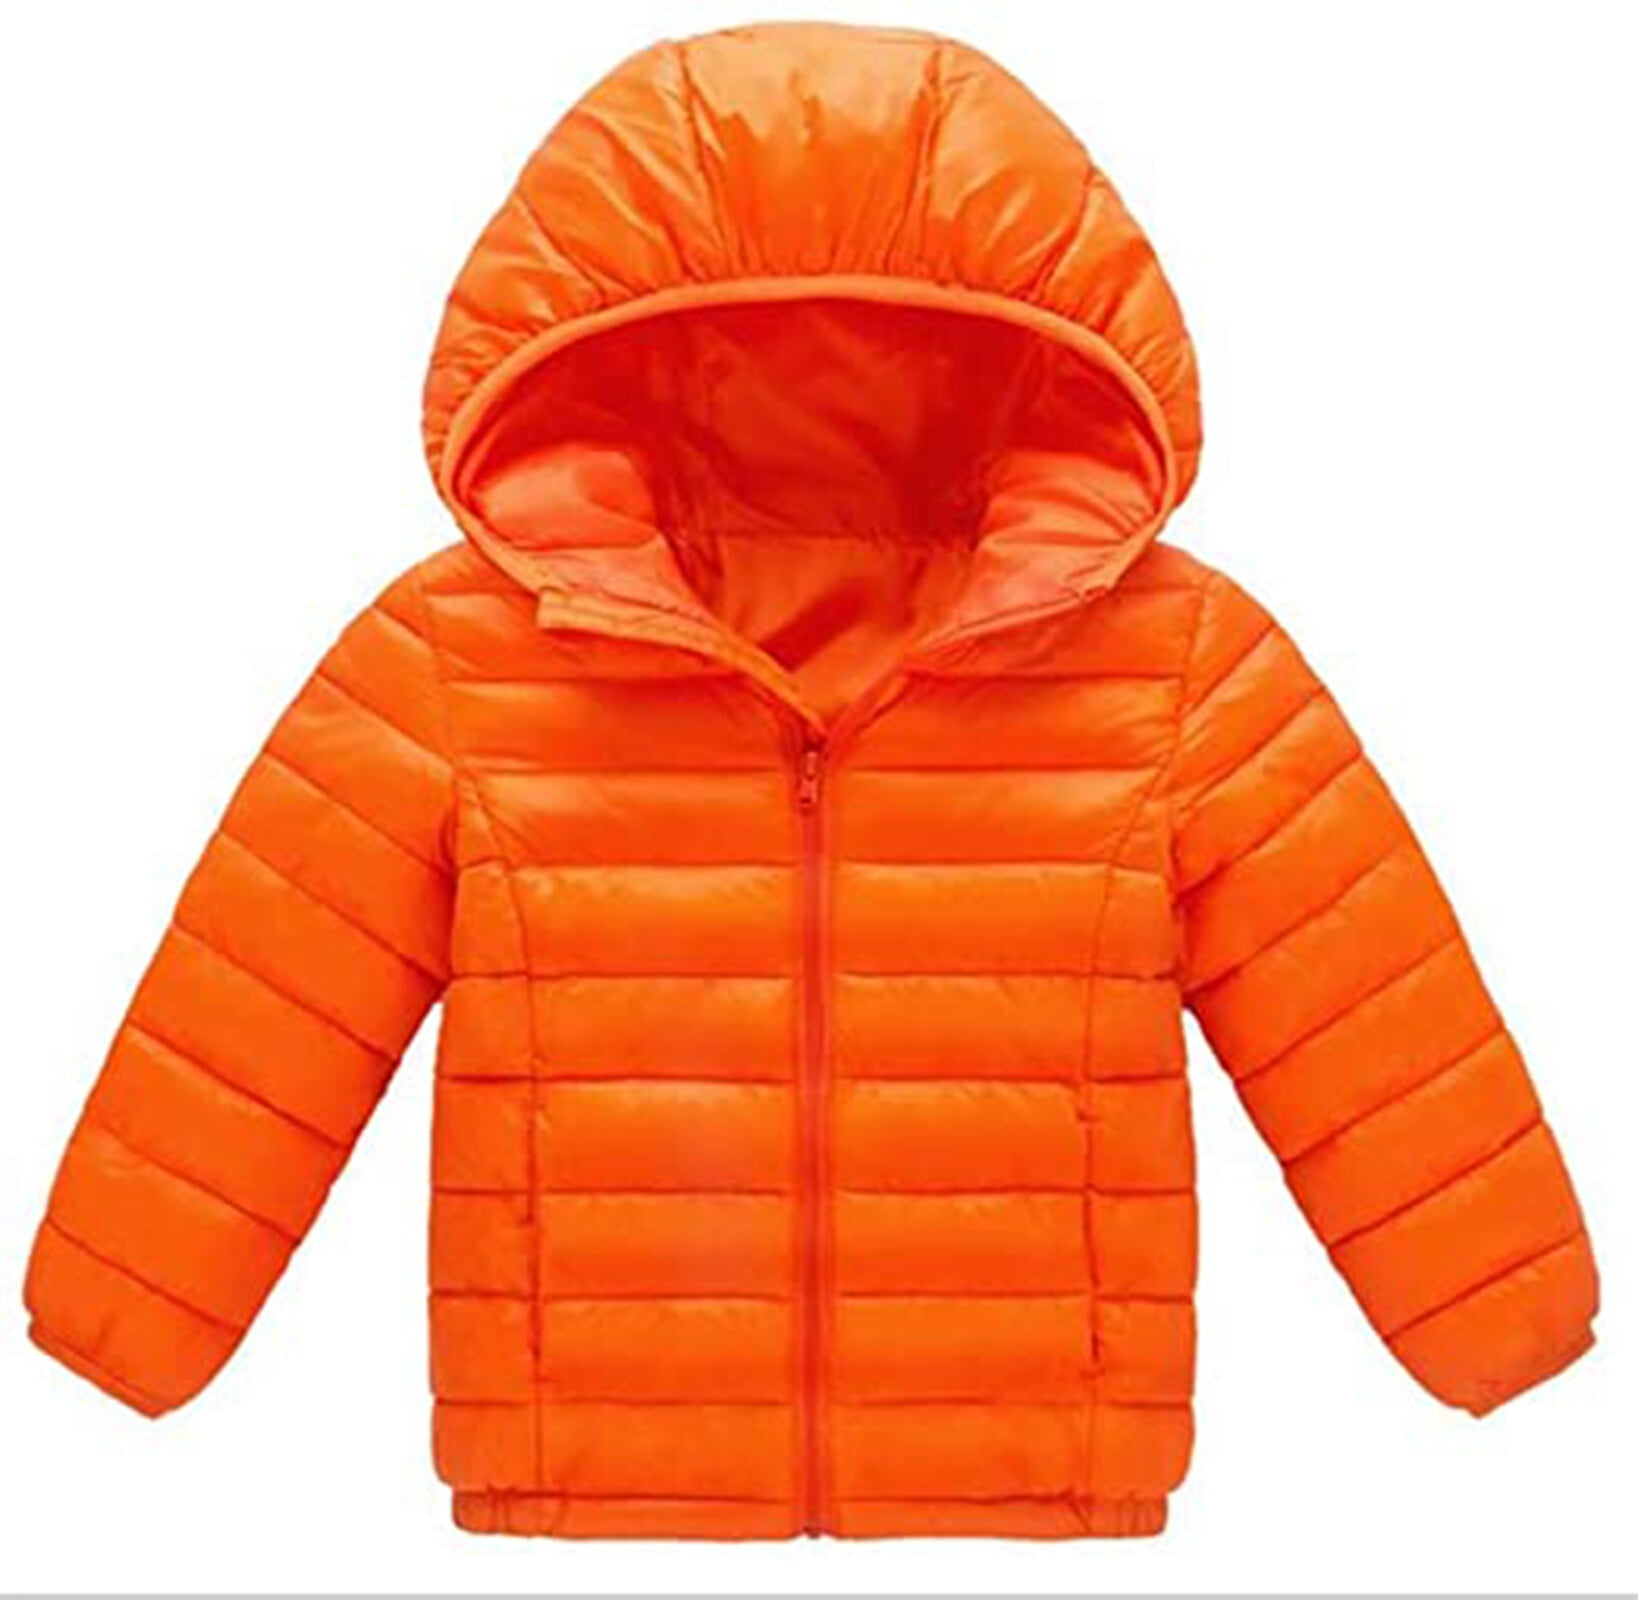 HILEELANG Kids Boy Girl Winter Hooded Puffer Jackets Coats Light Weight ...